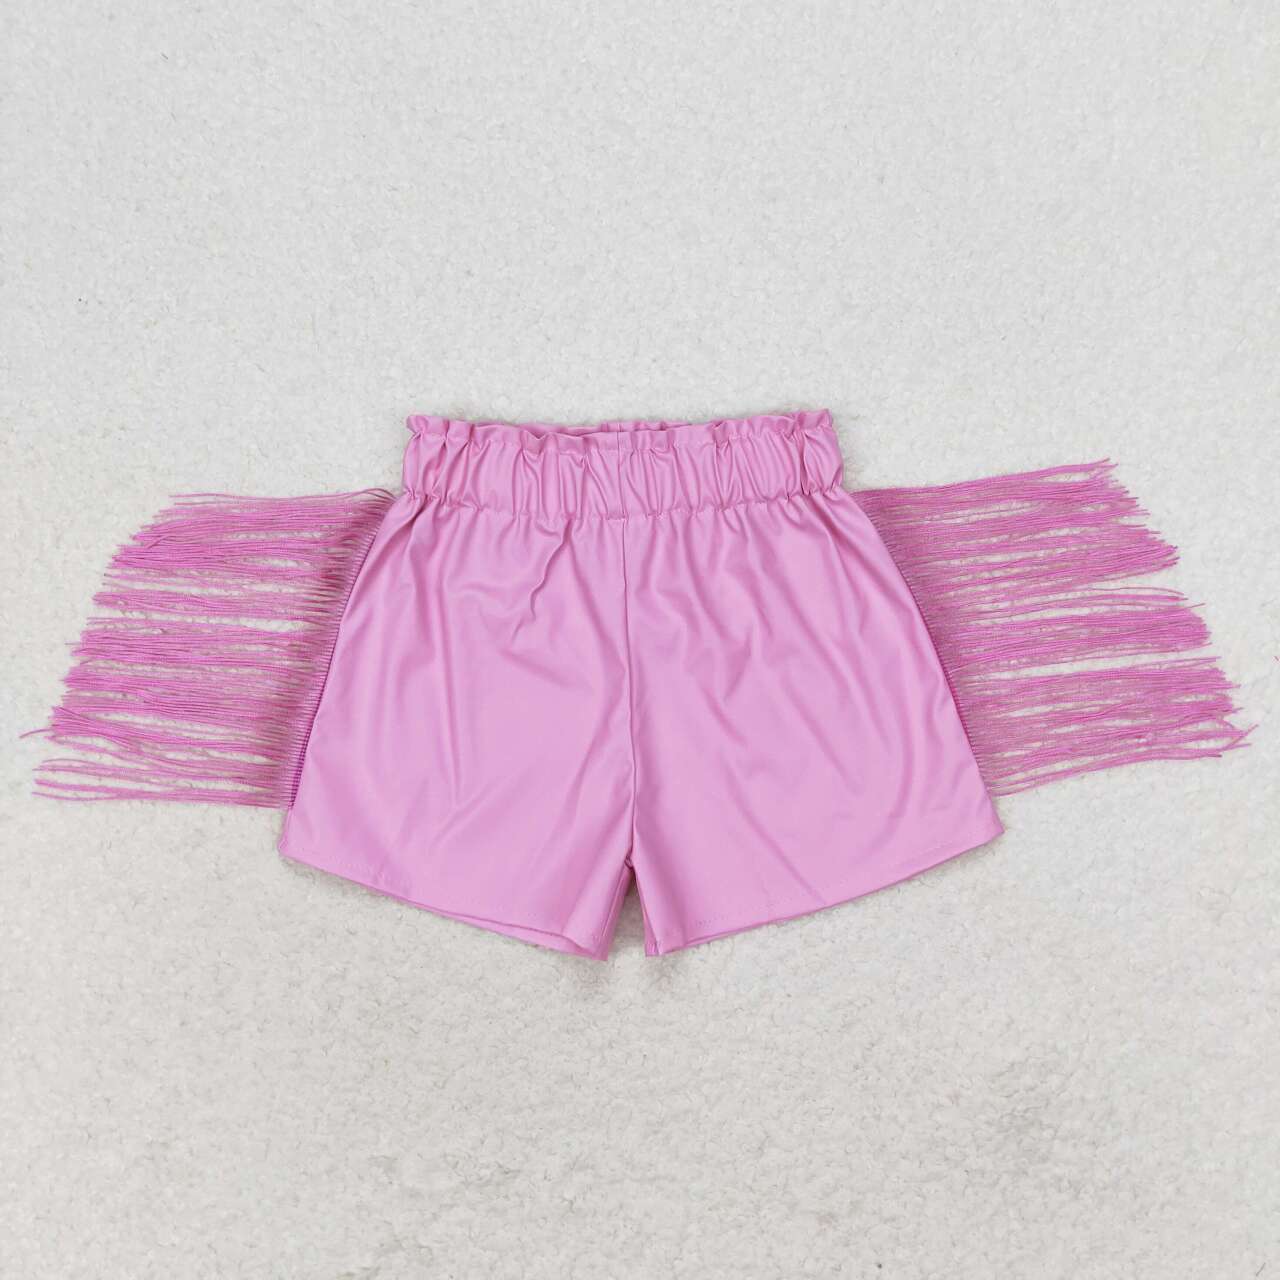 SS0222 Pink shiny leather fringe shorts